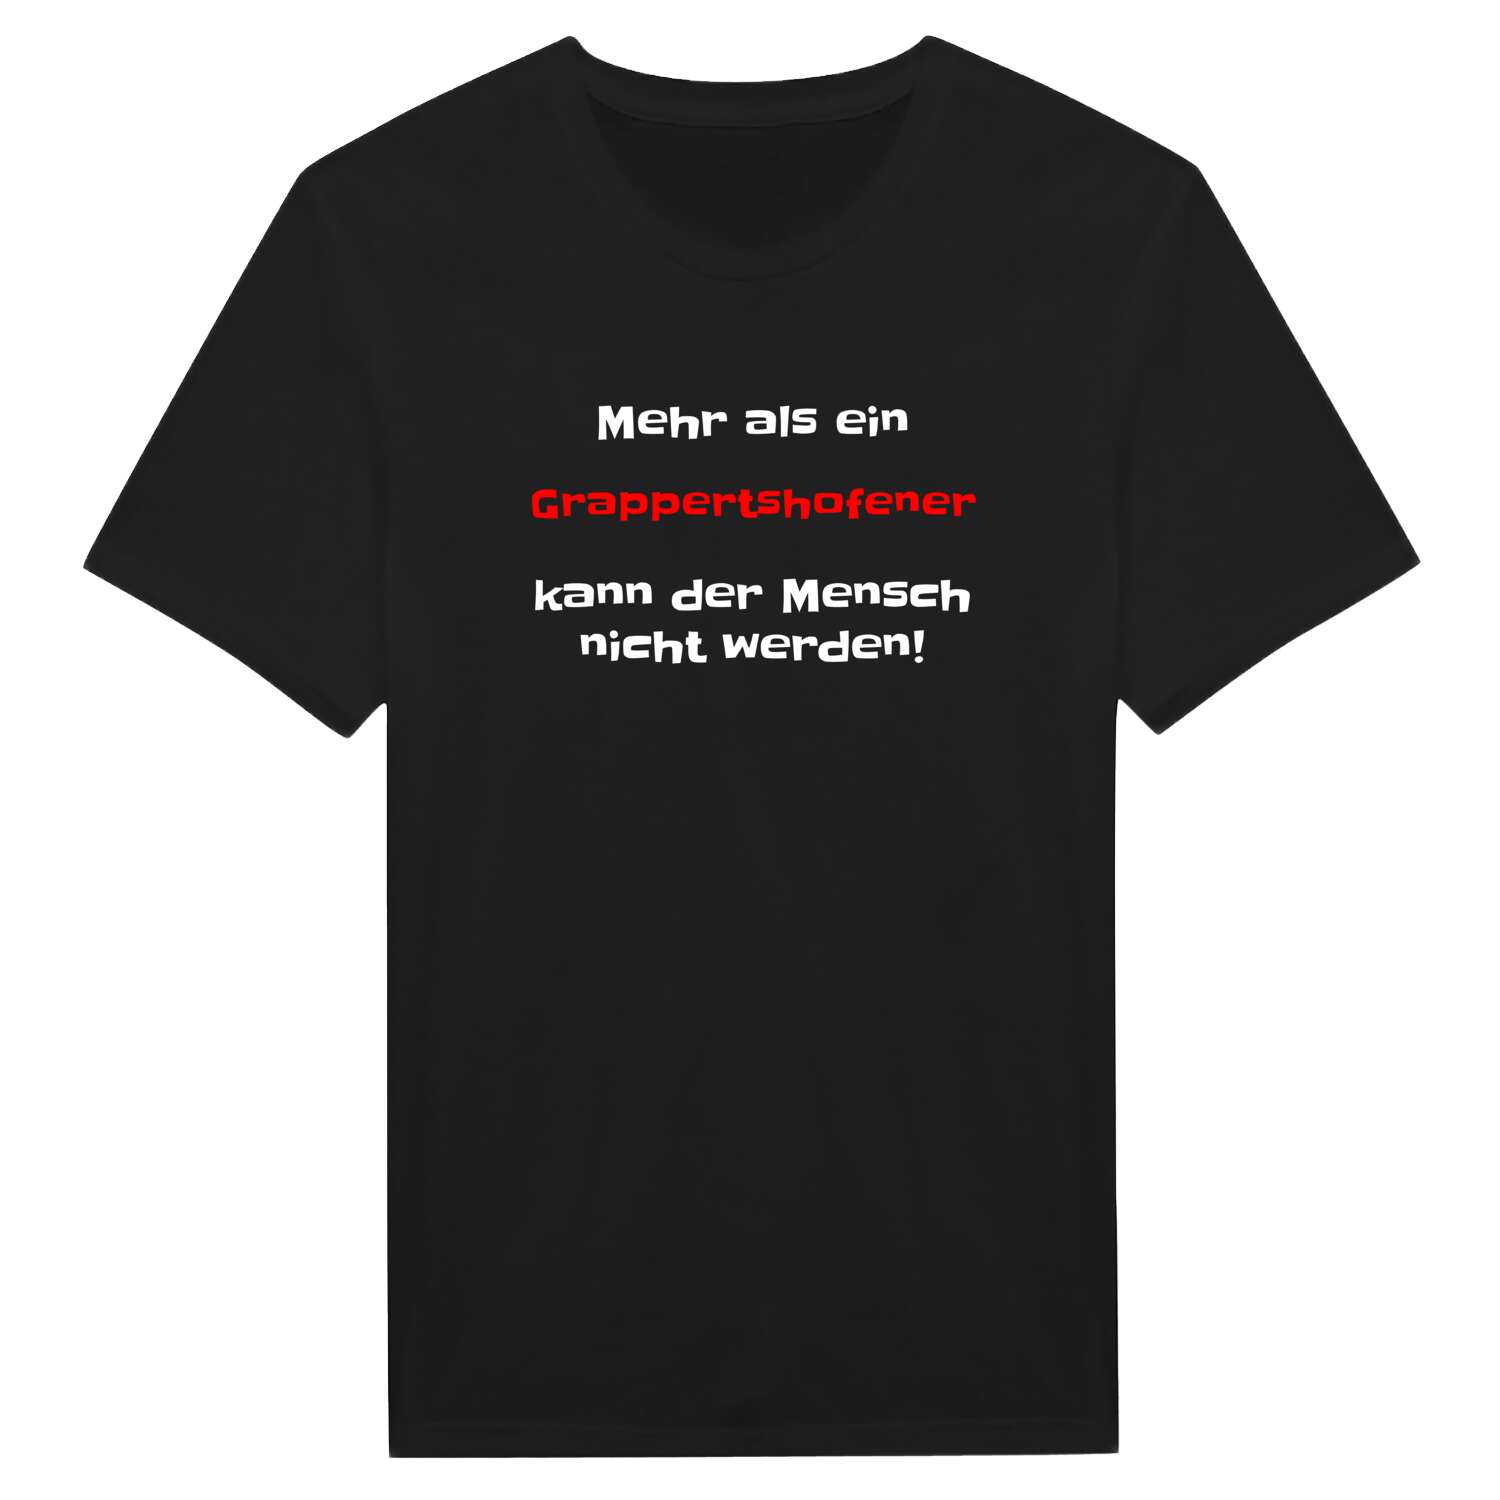 Grappertshofen T-Shirt »Mehr als ein«